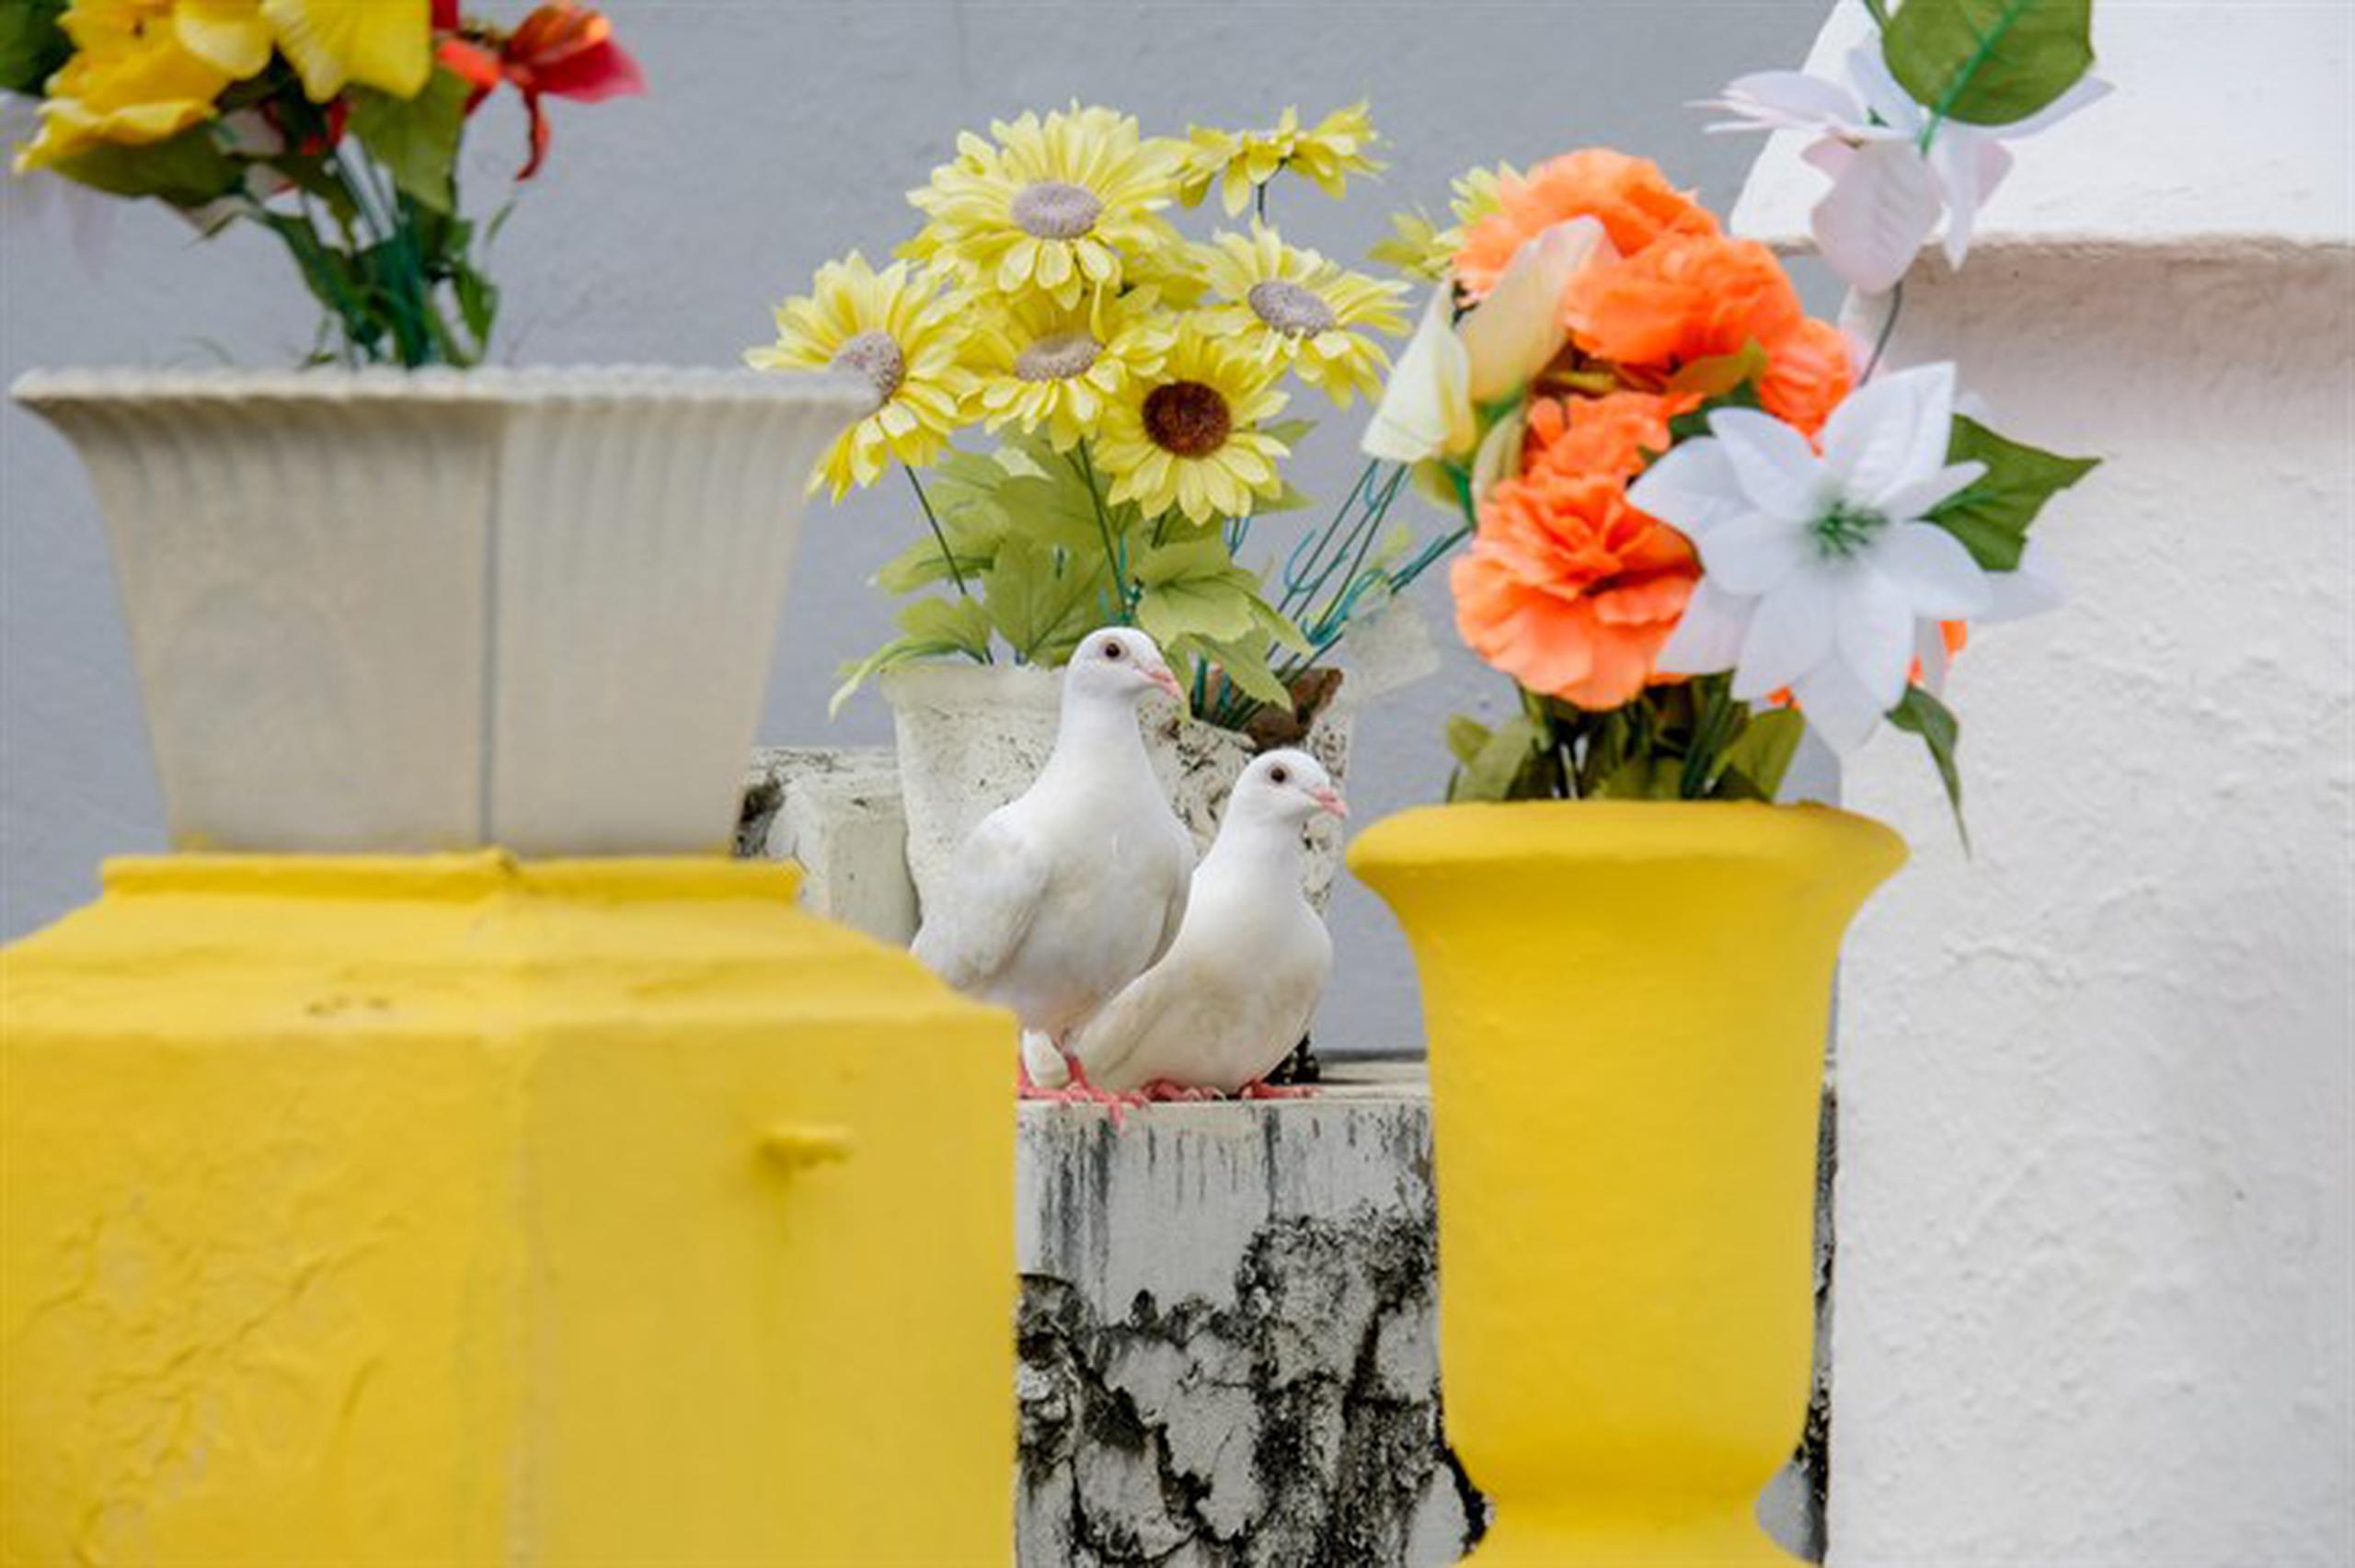 Dos palomas blancas, de las cuatro que fueron liberadas en el  cementerio municipal de Trujillo Alto,  permanecían cerca de la tumba donde fue sepultada la familia.   (Para Primera Hora / Ricardo Reyes)